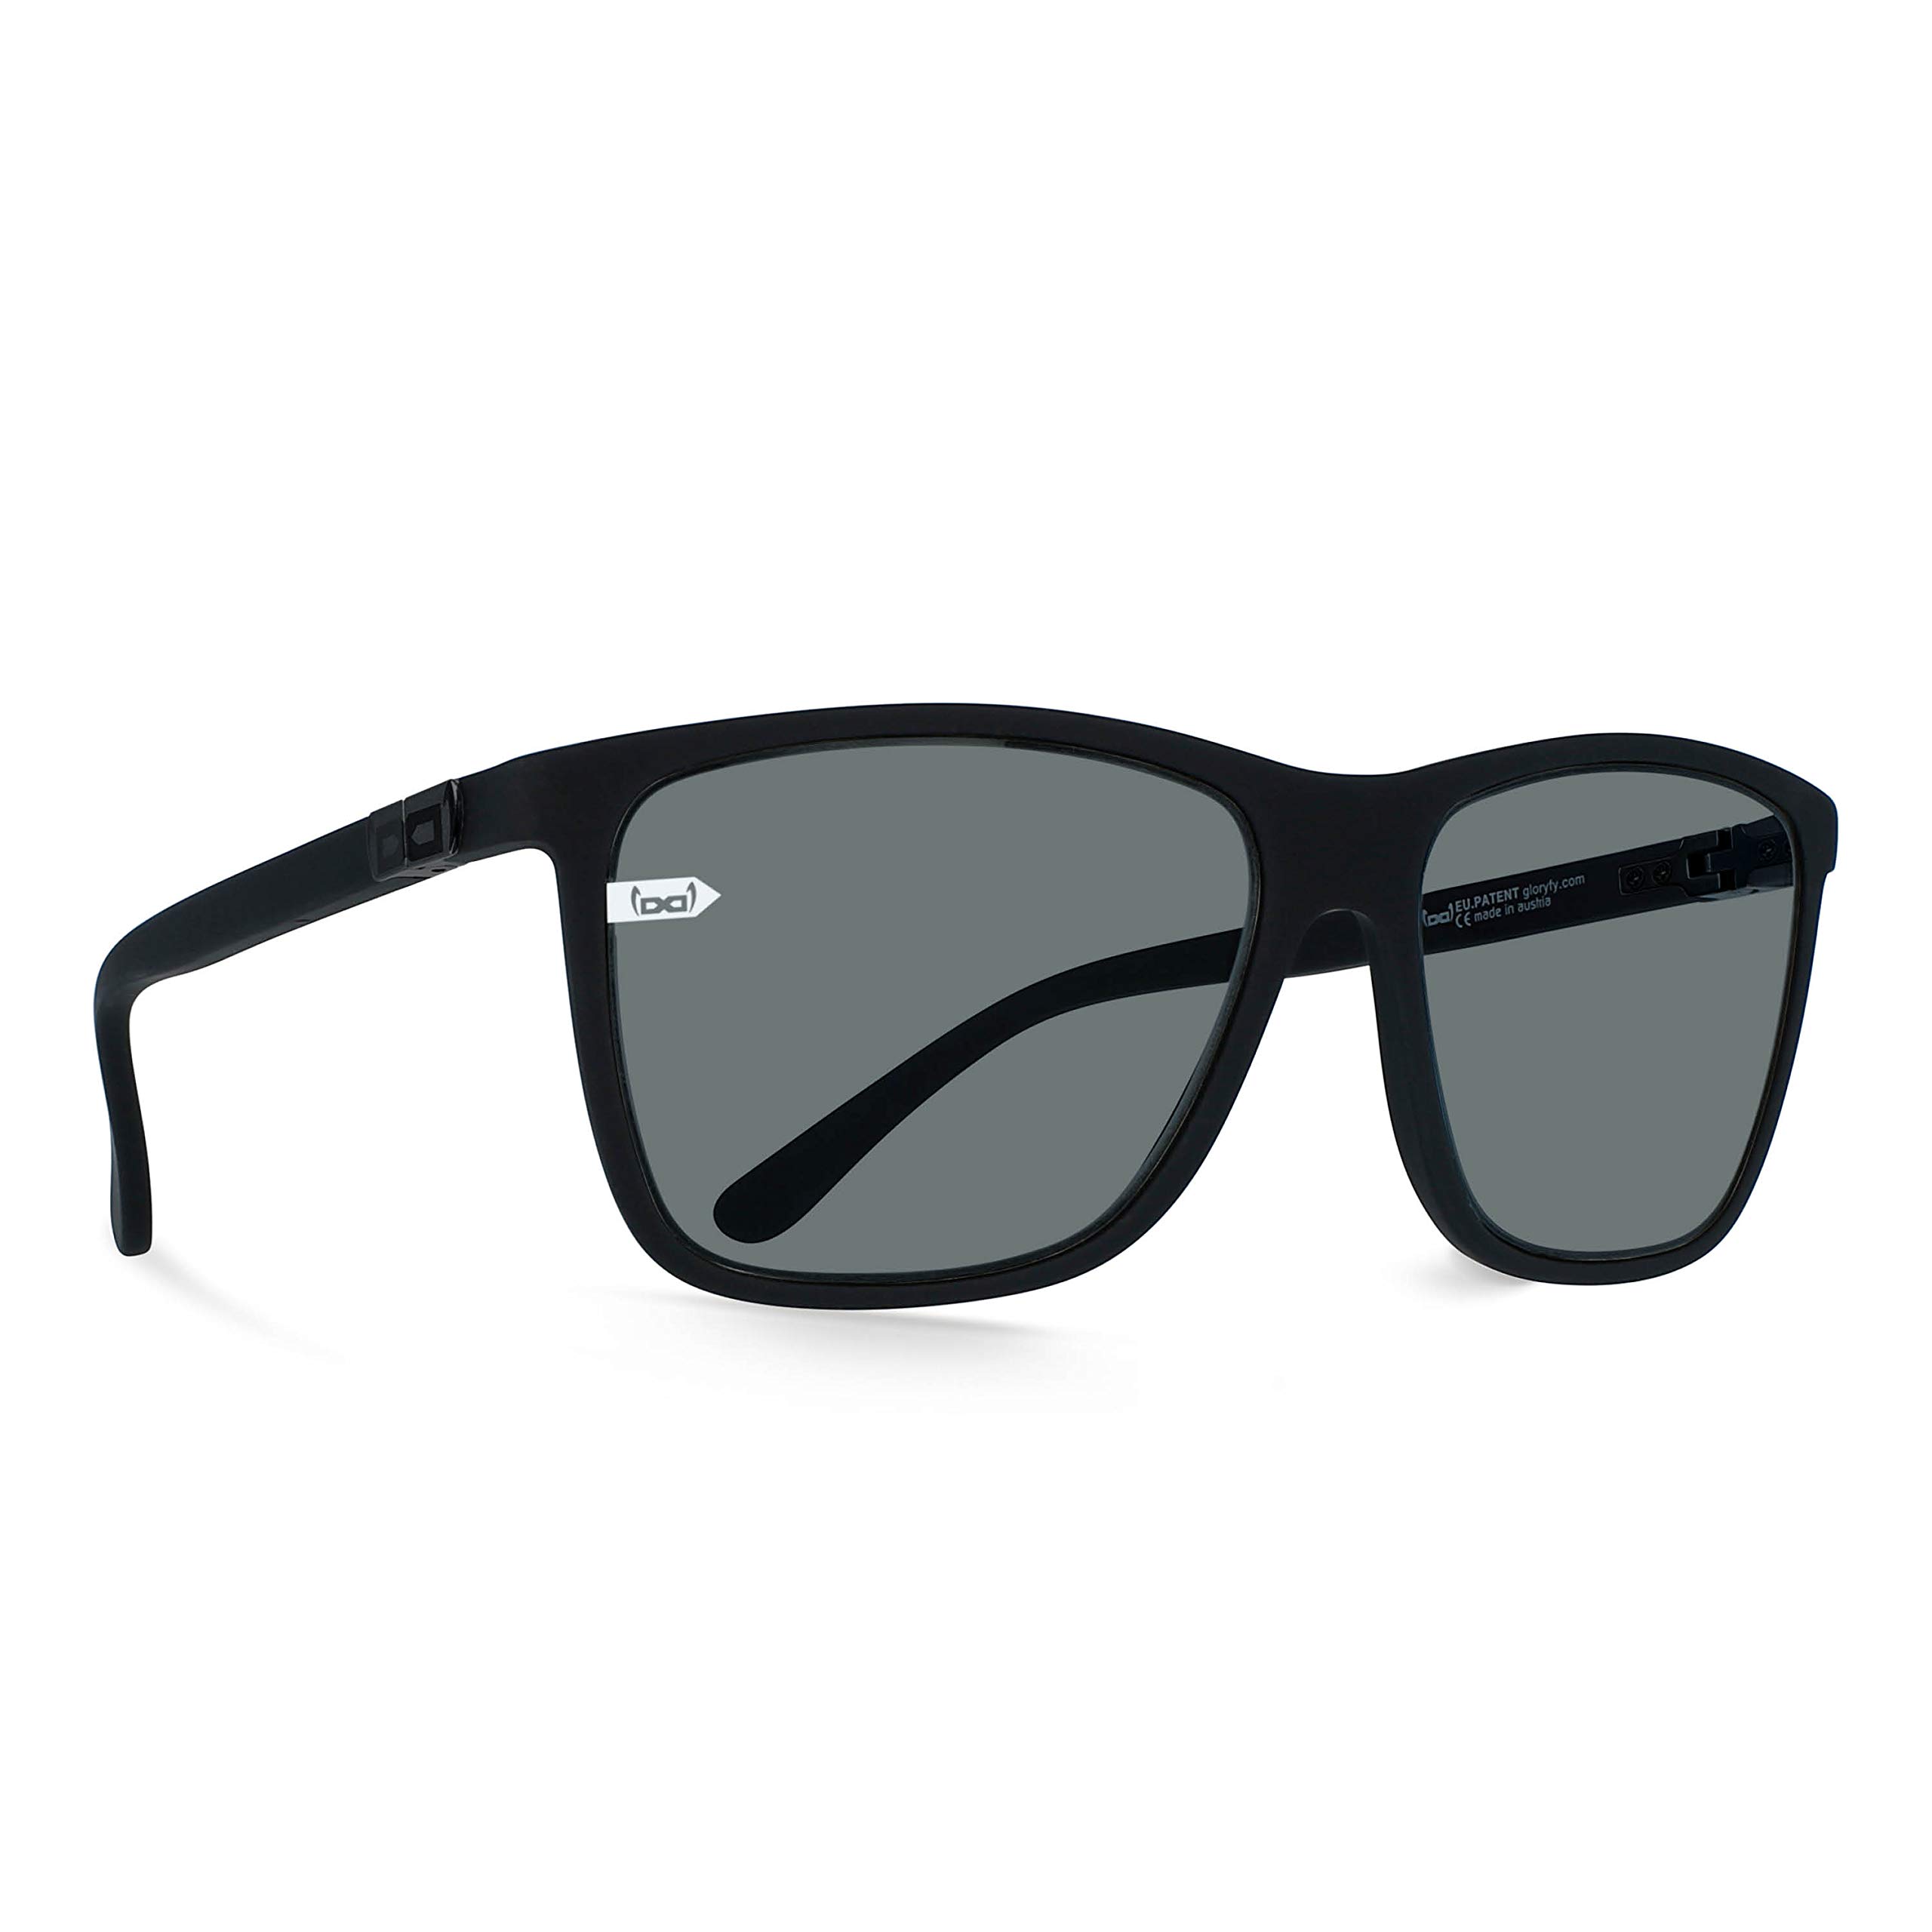 gloryfy unbreakable eyewear Unisex (Gi15 St. Pauli Black in Black) - Unzerbrechliche Sonnenbrille, Sport, Damen, He Sonnenbrille, Schwarz, Erwachsenen Sonnenbrille EU